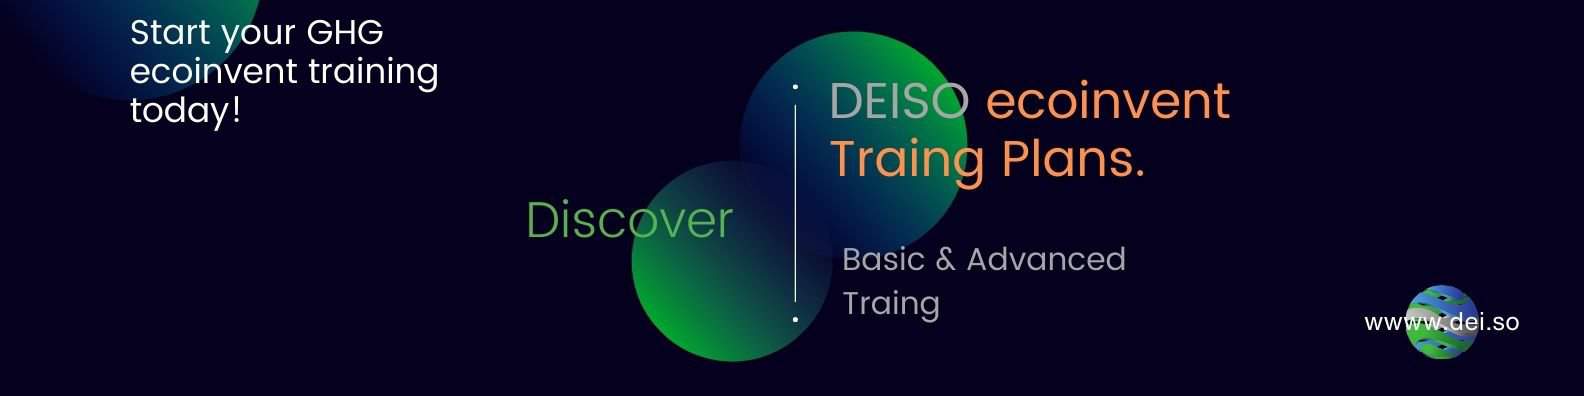 الخطط والدورات التدريبية لـ DEISO ecoinvent